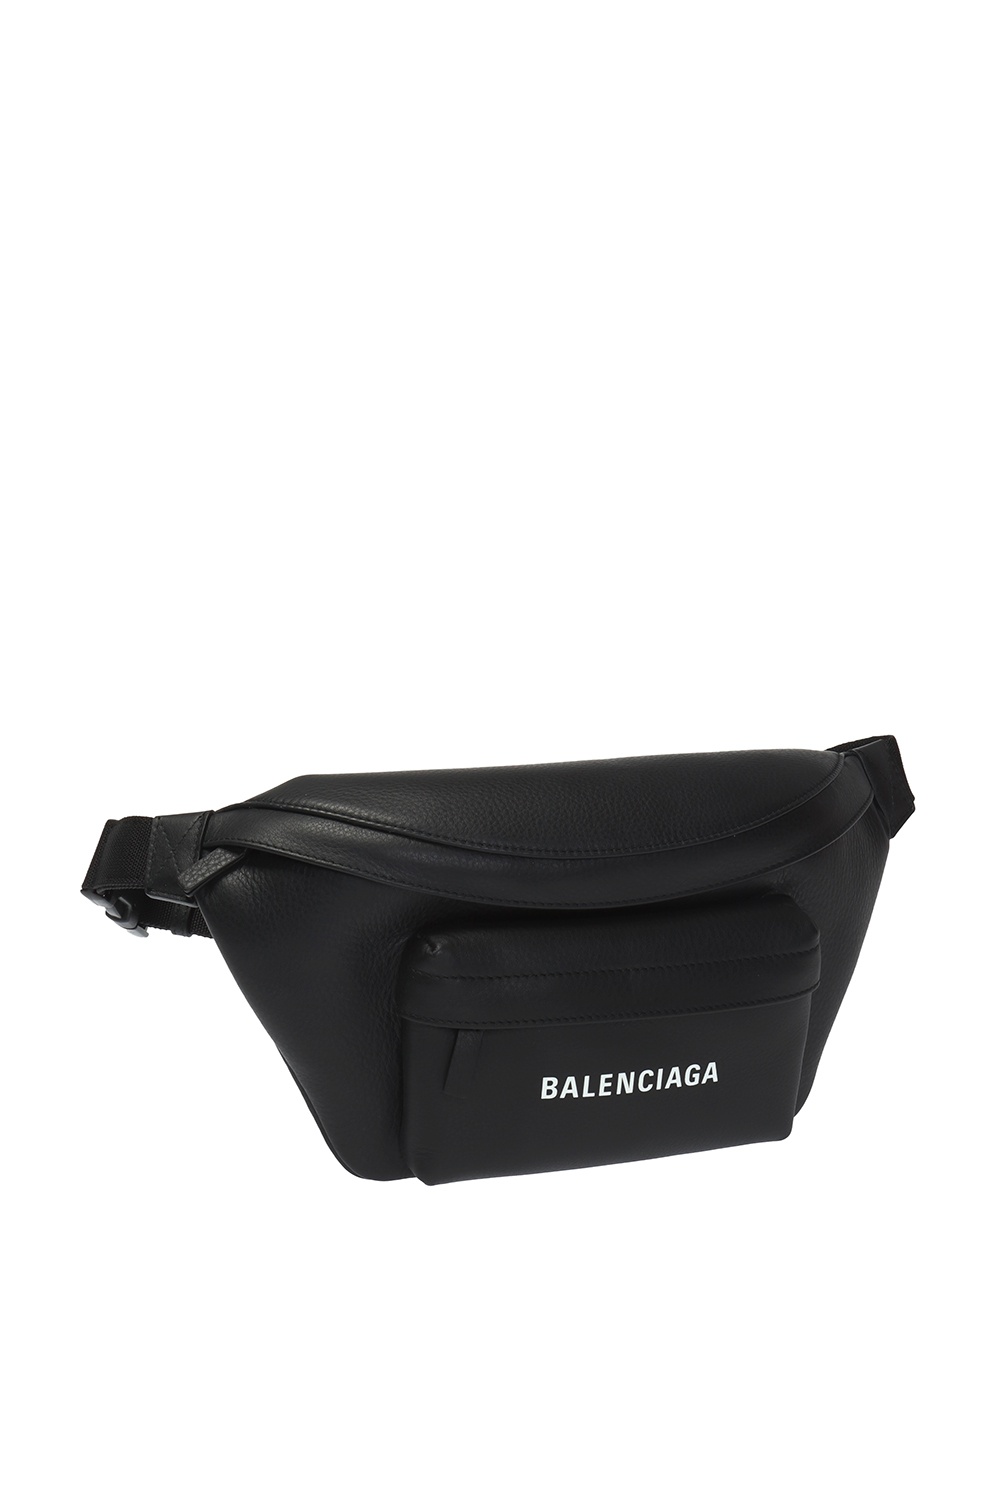 Black belt bag Balenciaga - Vitkac Spain